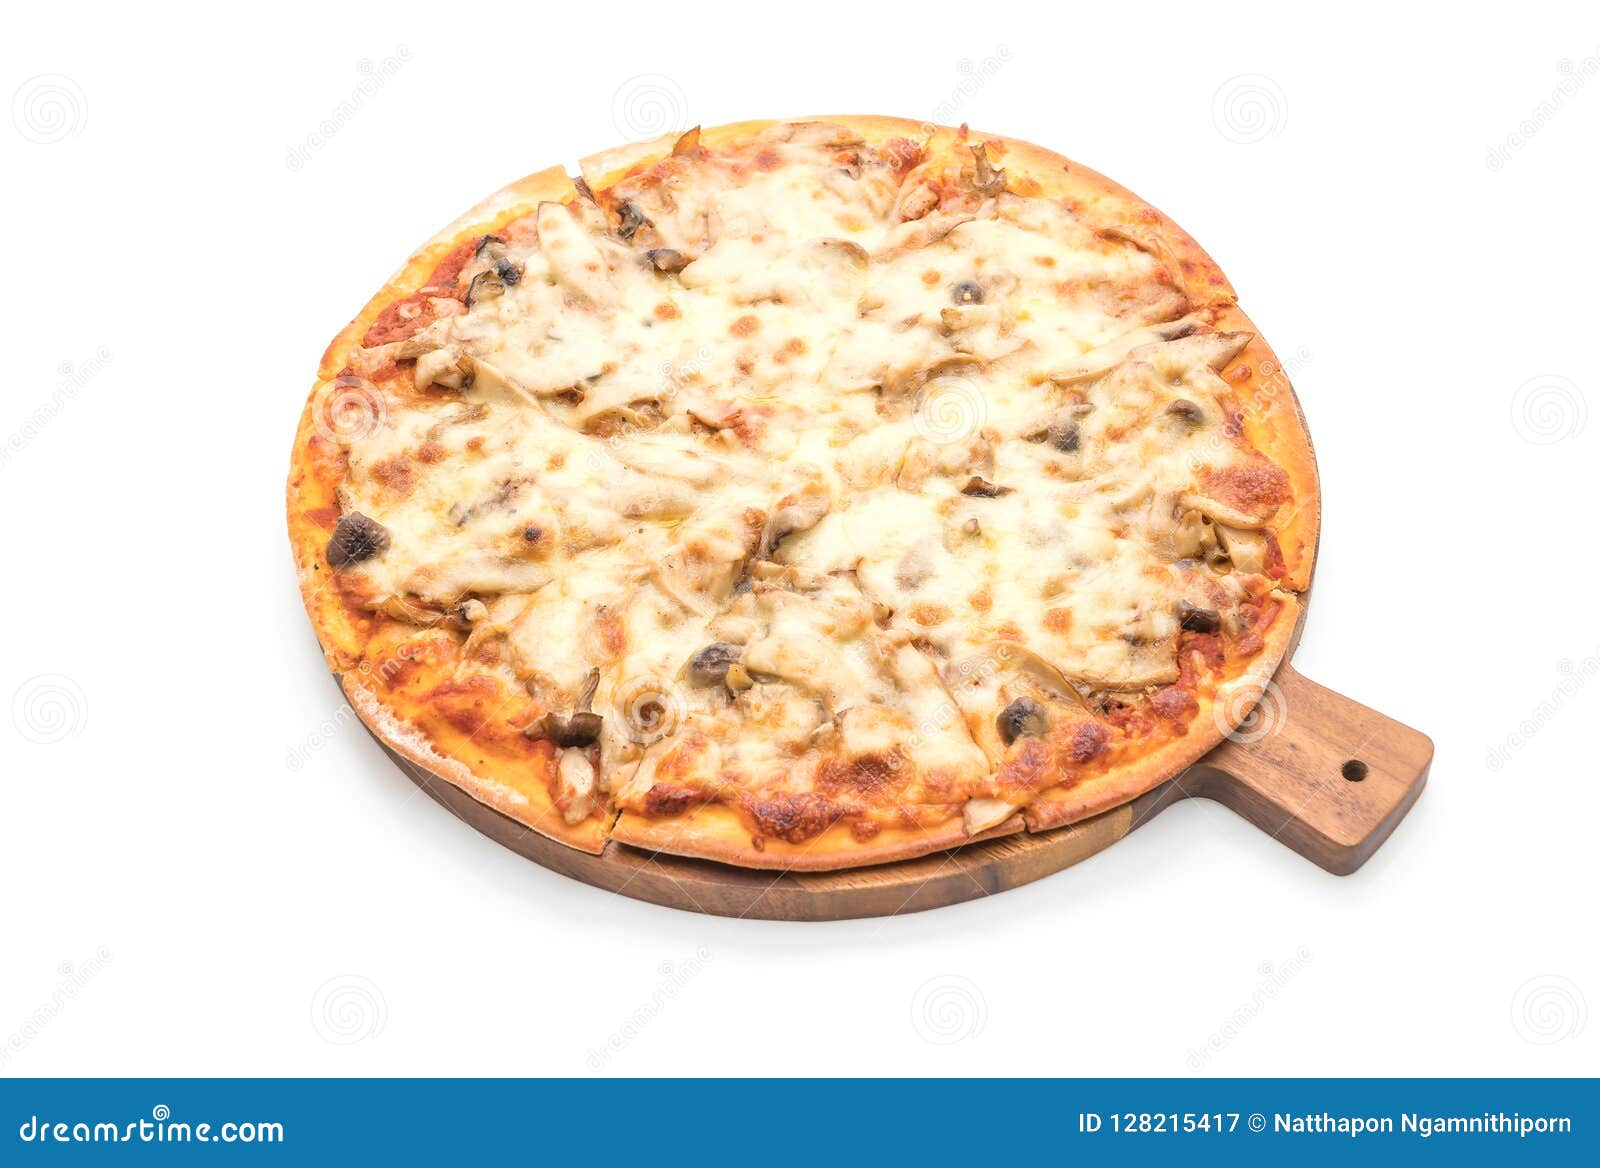 пицца грибная рецепт белый соус фото 92